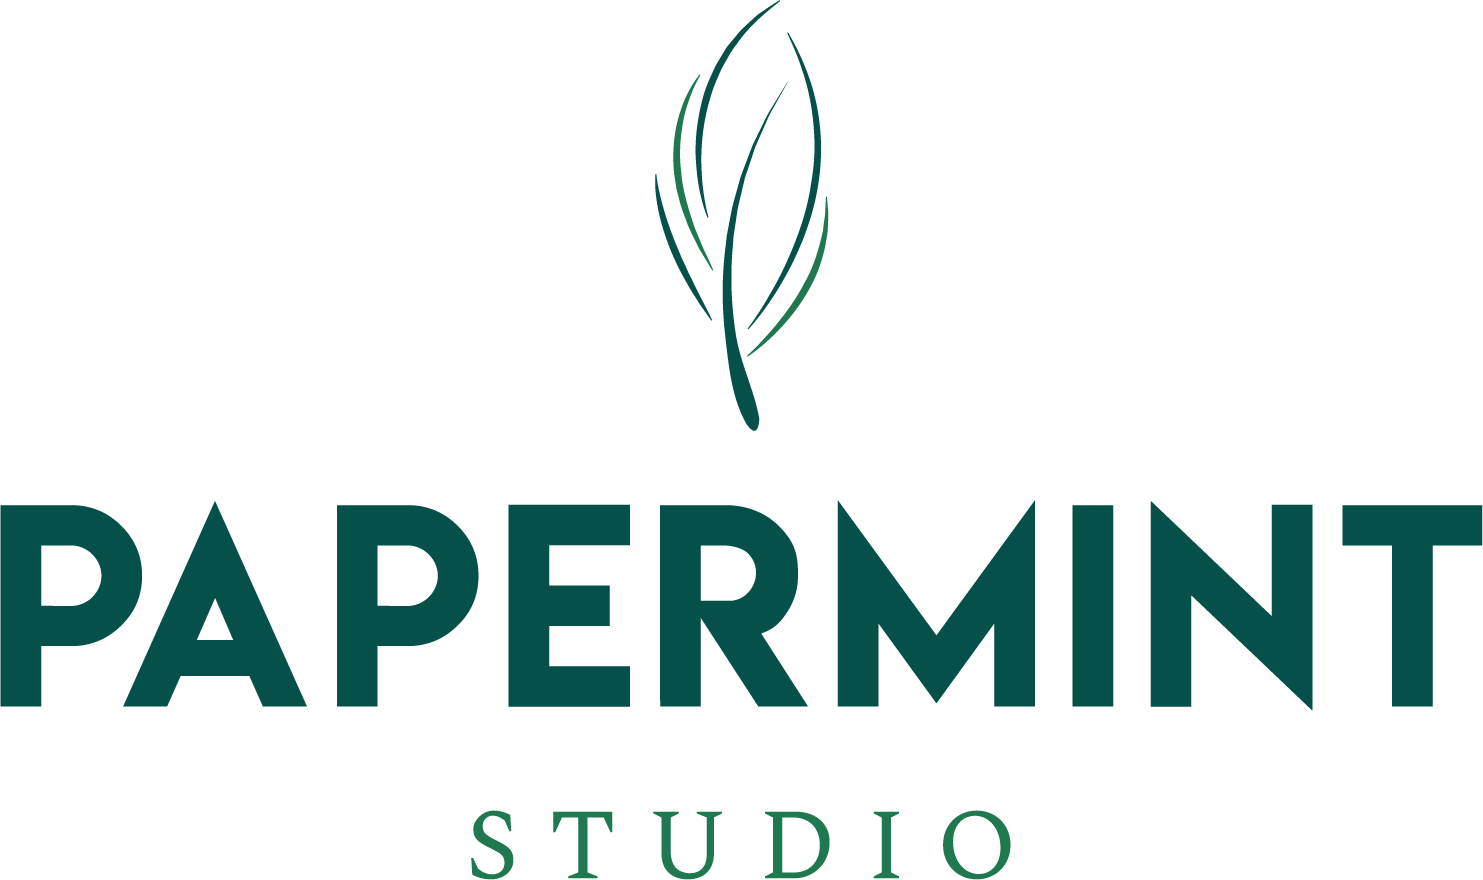 Papermint studio